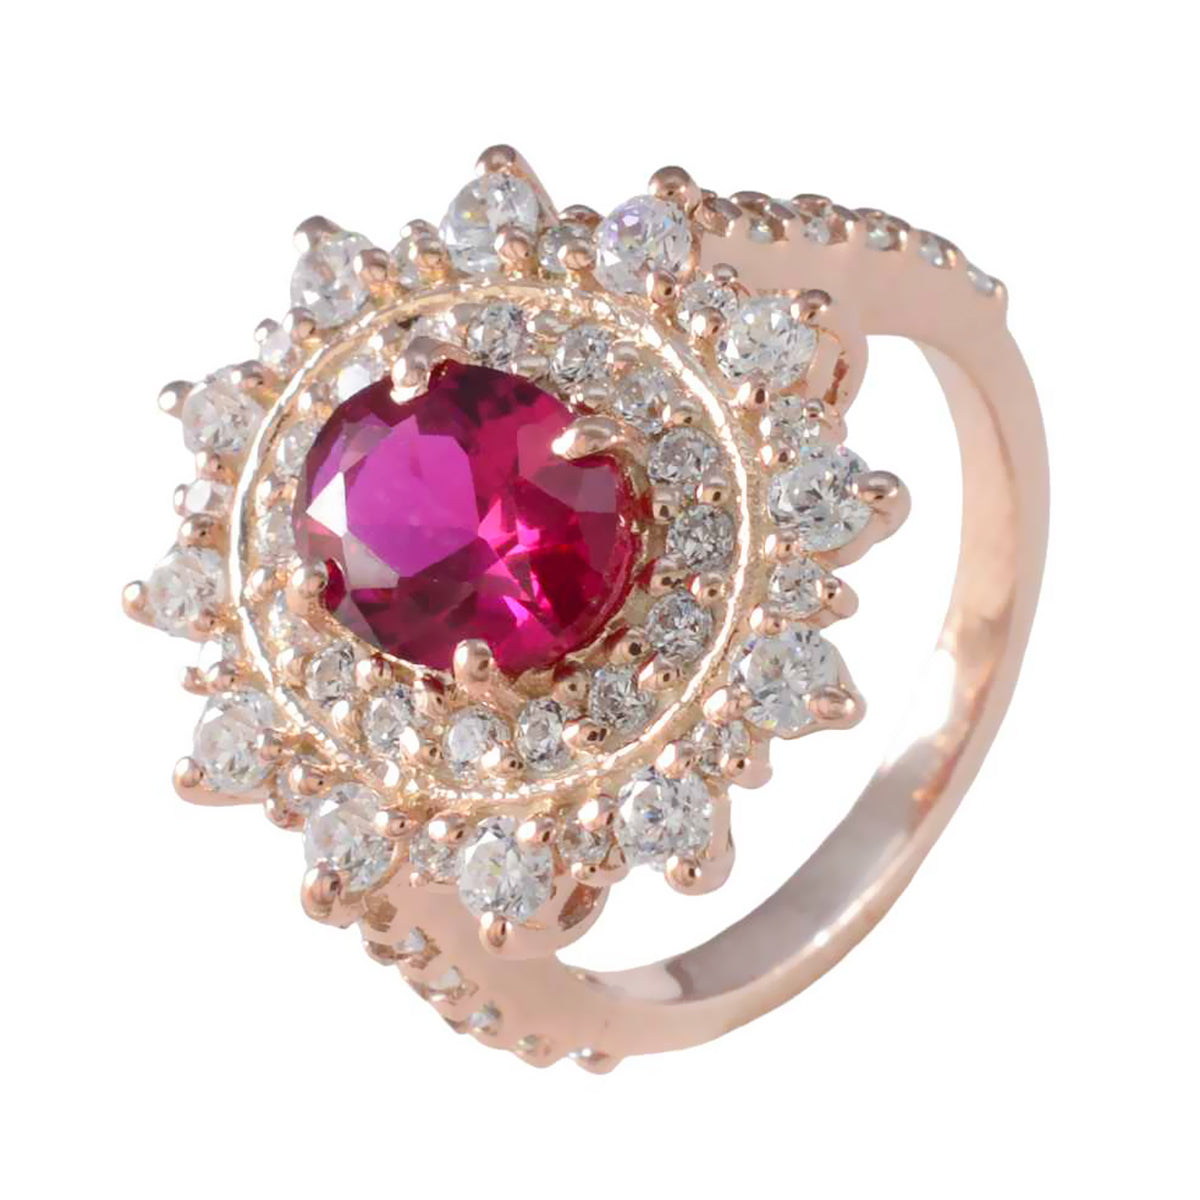 Riyo – bague en argent total avec placage en or rose, pierre rubis cz, forme ovale, serti de griffes, bijoux élégants, bague de fête des mères